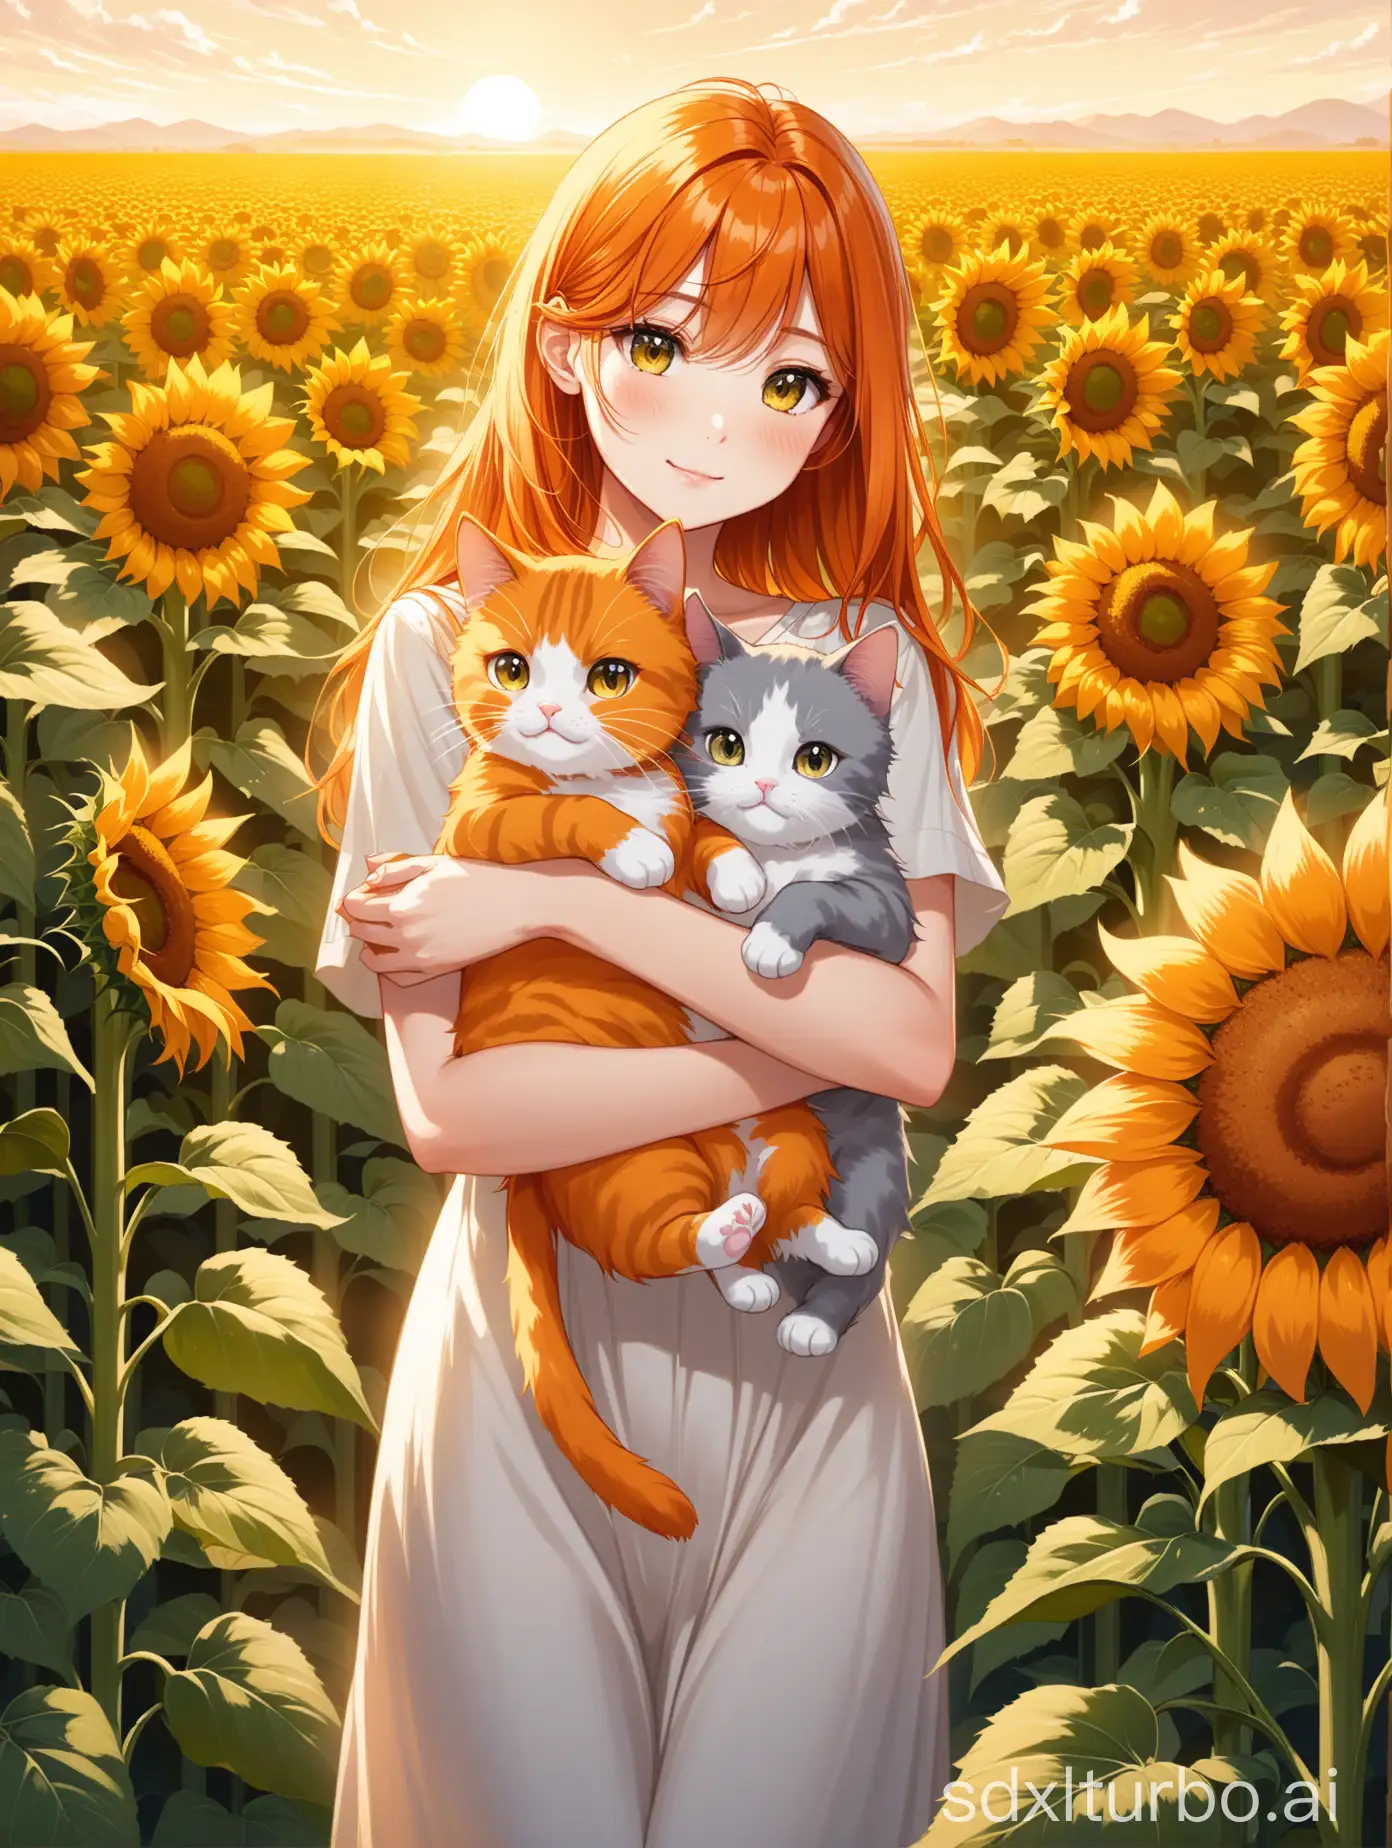 橘色头发的女人，带着1只灰色三花猫1只橘色的加菲猫，游玩在满地的向日葵花丛里